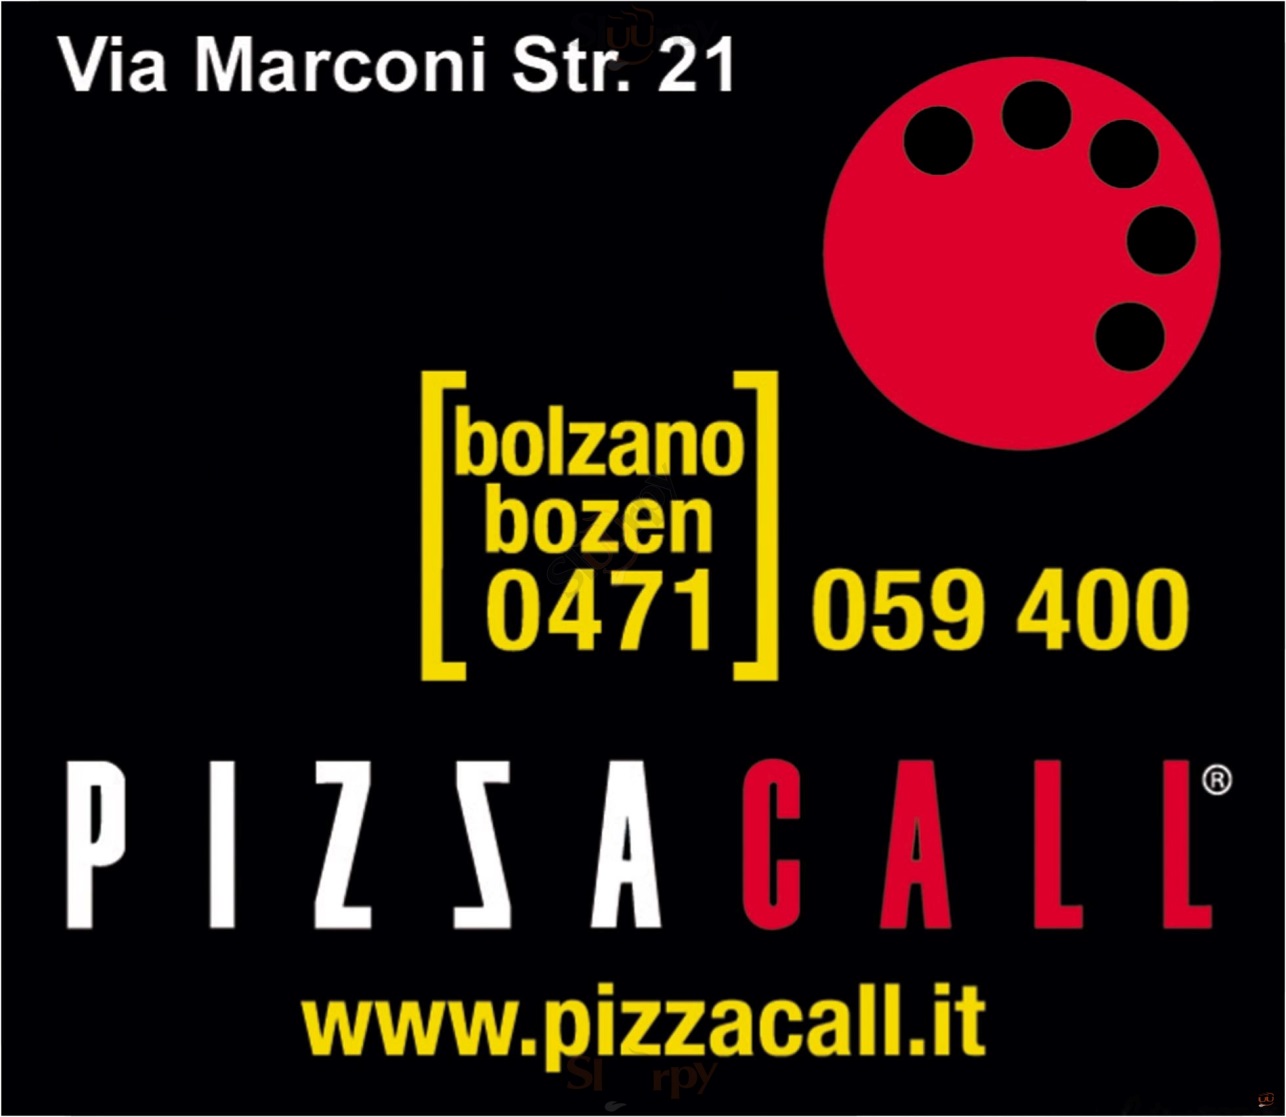 PIZZA CALL Bolzano menù 1 pagina